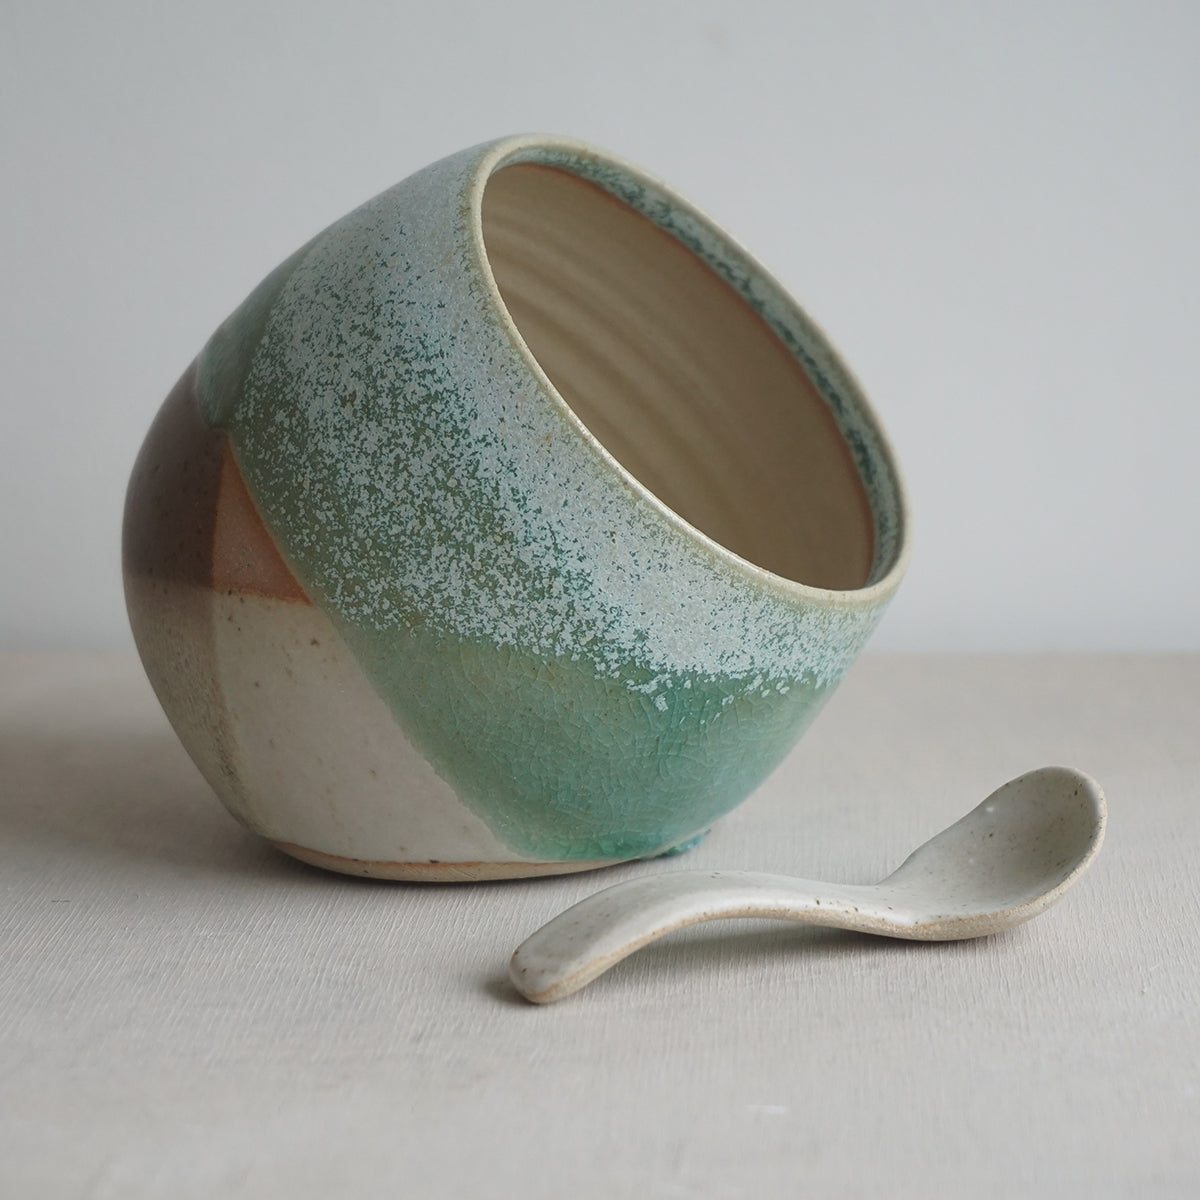 Ceramic Tableware: Liz Vidal x Piglet in Bed